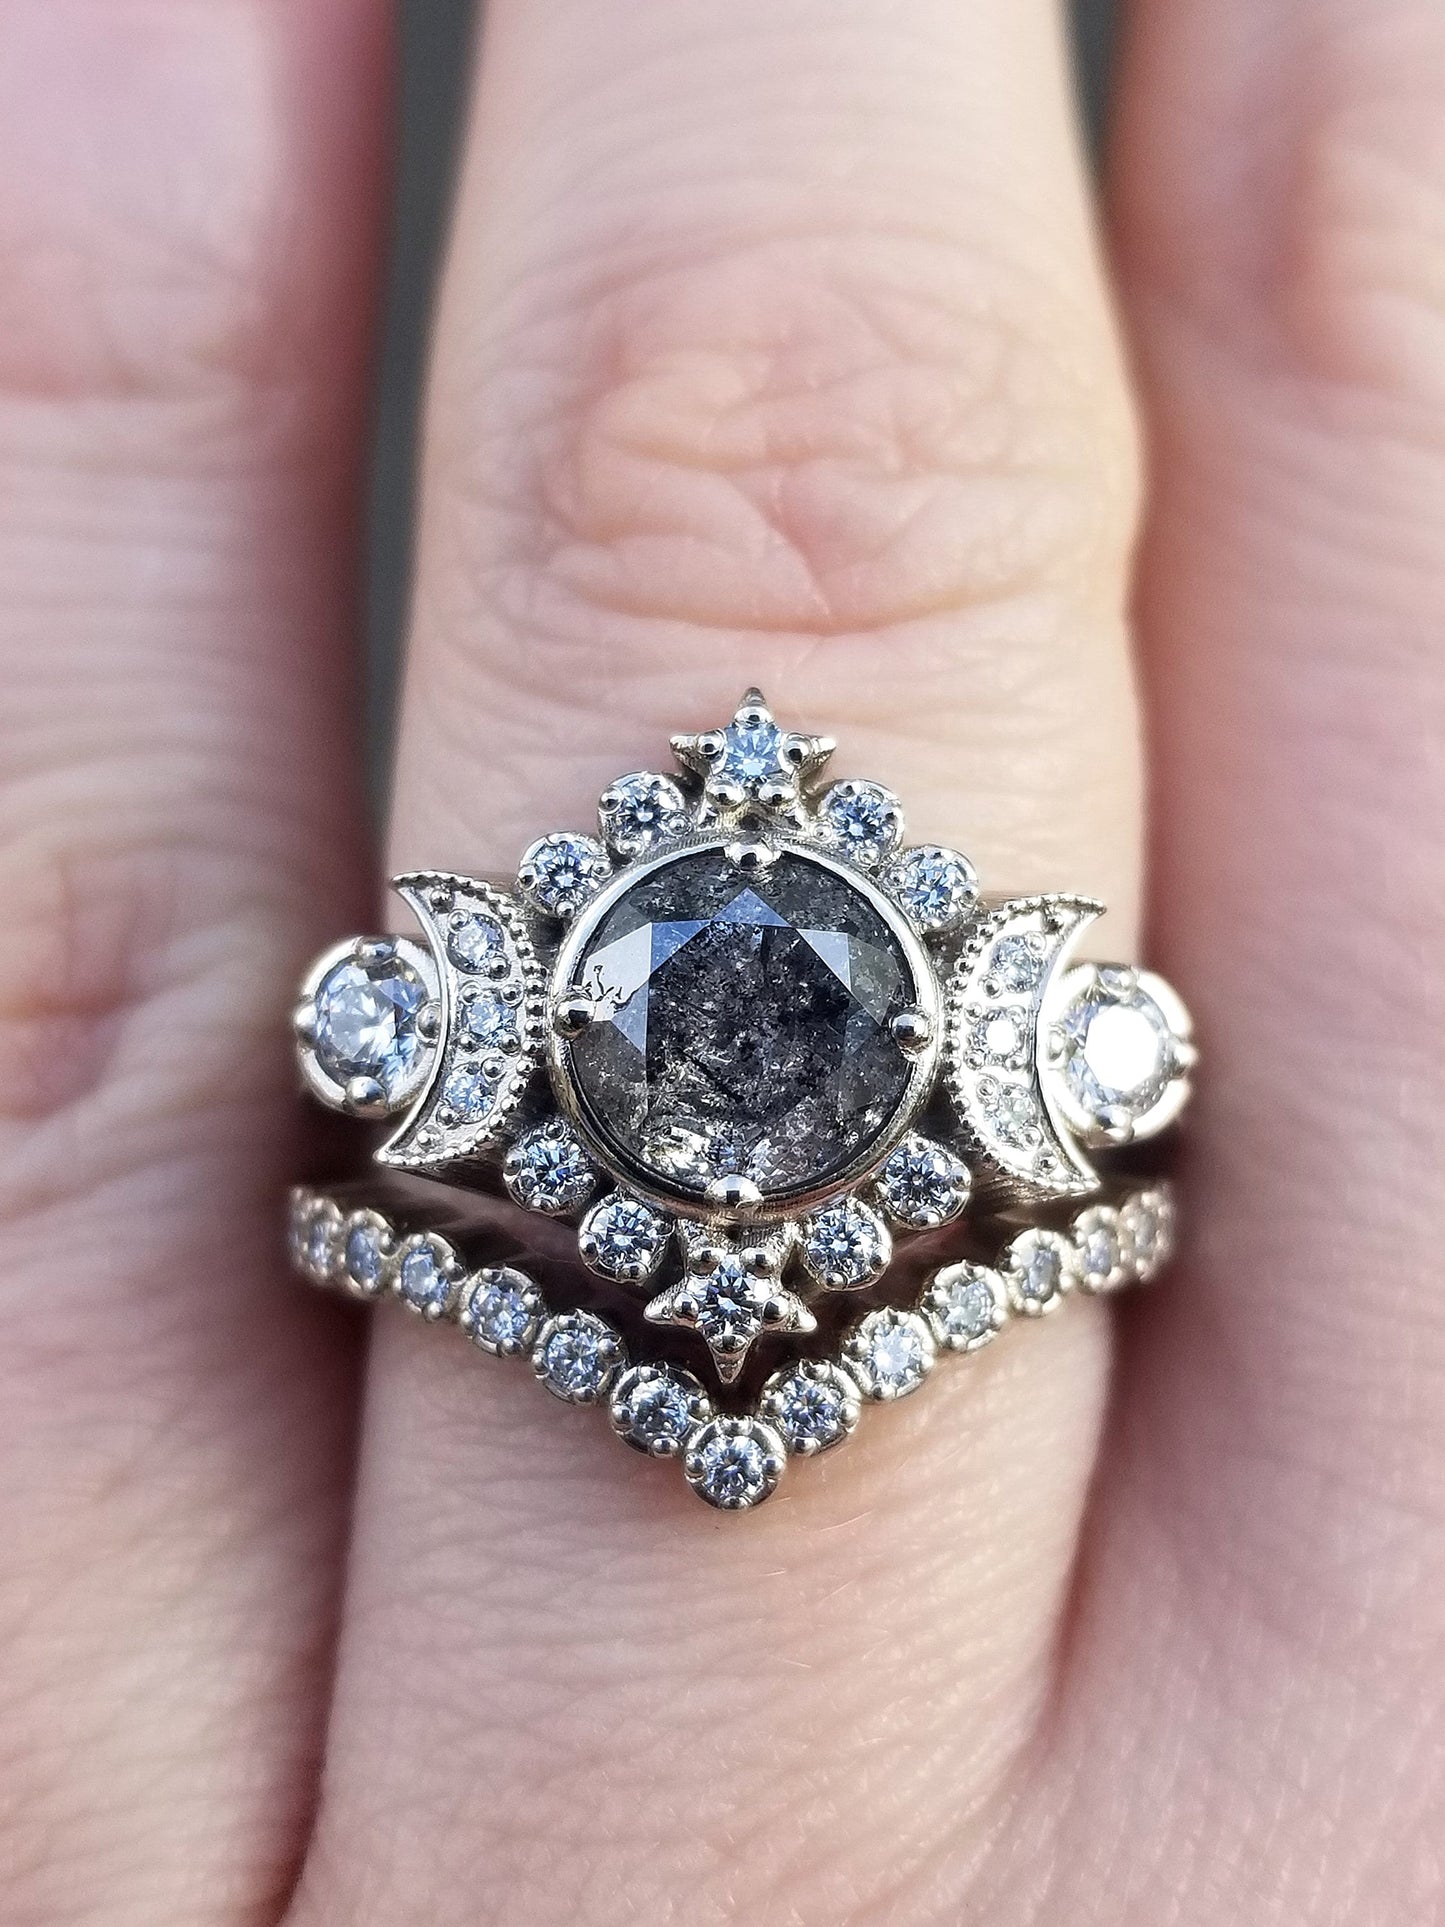 Ready to Ship Size 6.5 - 8 - Selene Moon Goddess Ring - Natural Galaxy Diamond with White Diamonds - 14k Palladium White Gold - Pave Chevron